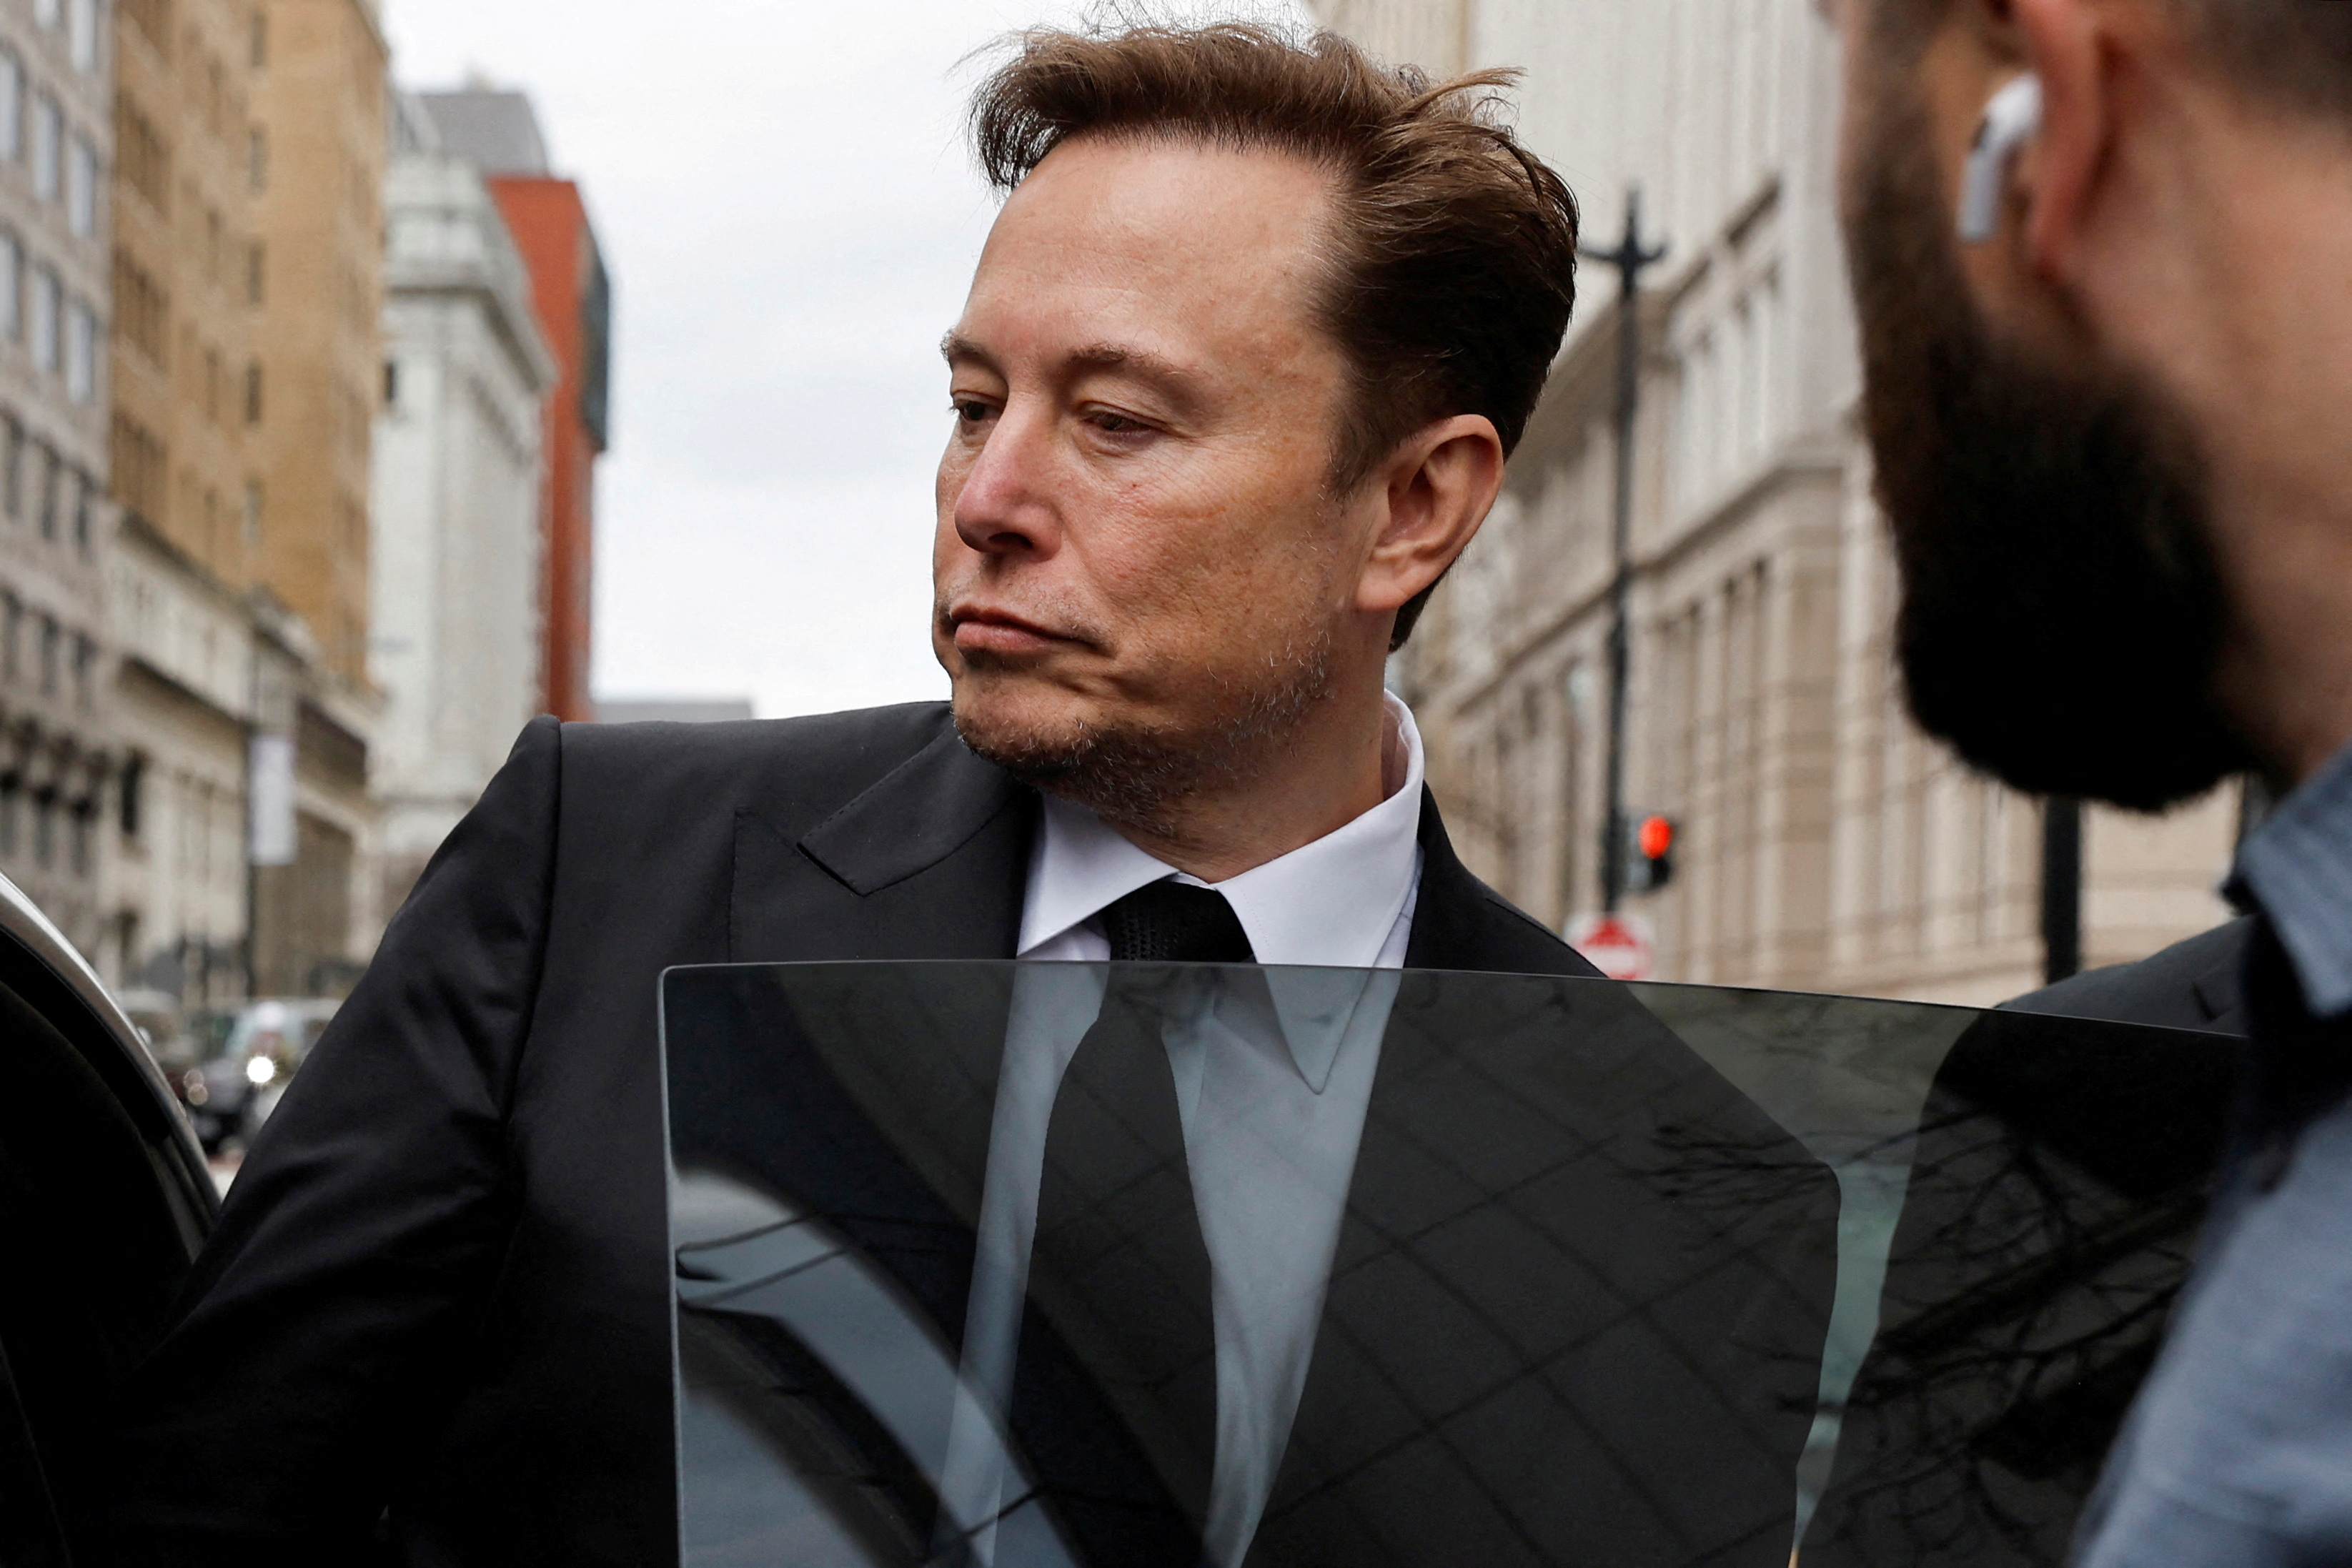 El cofundador de Twitter Jack Dorsey criticó la gestión de Elon Musk como director de la compañía